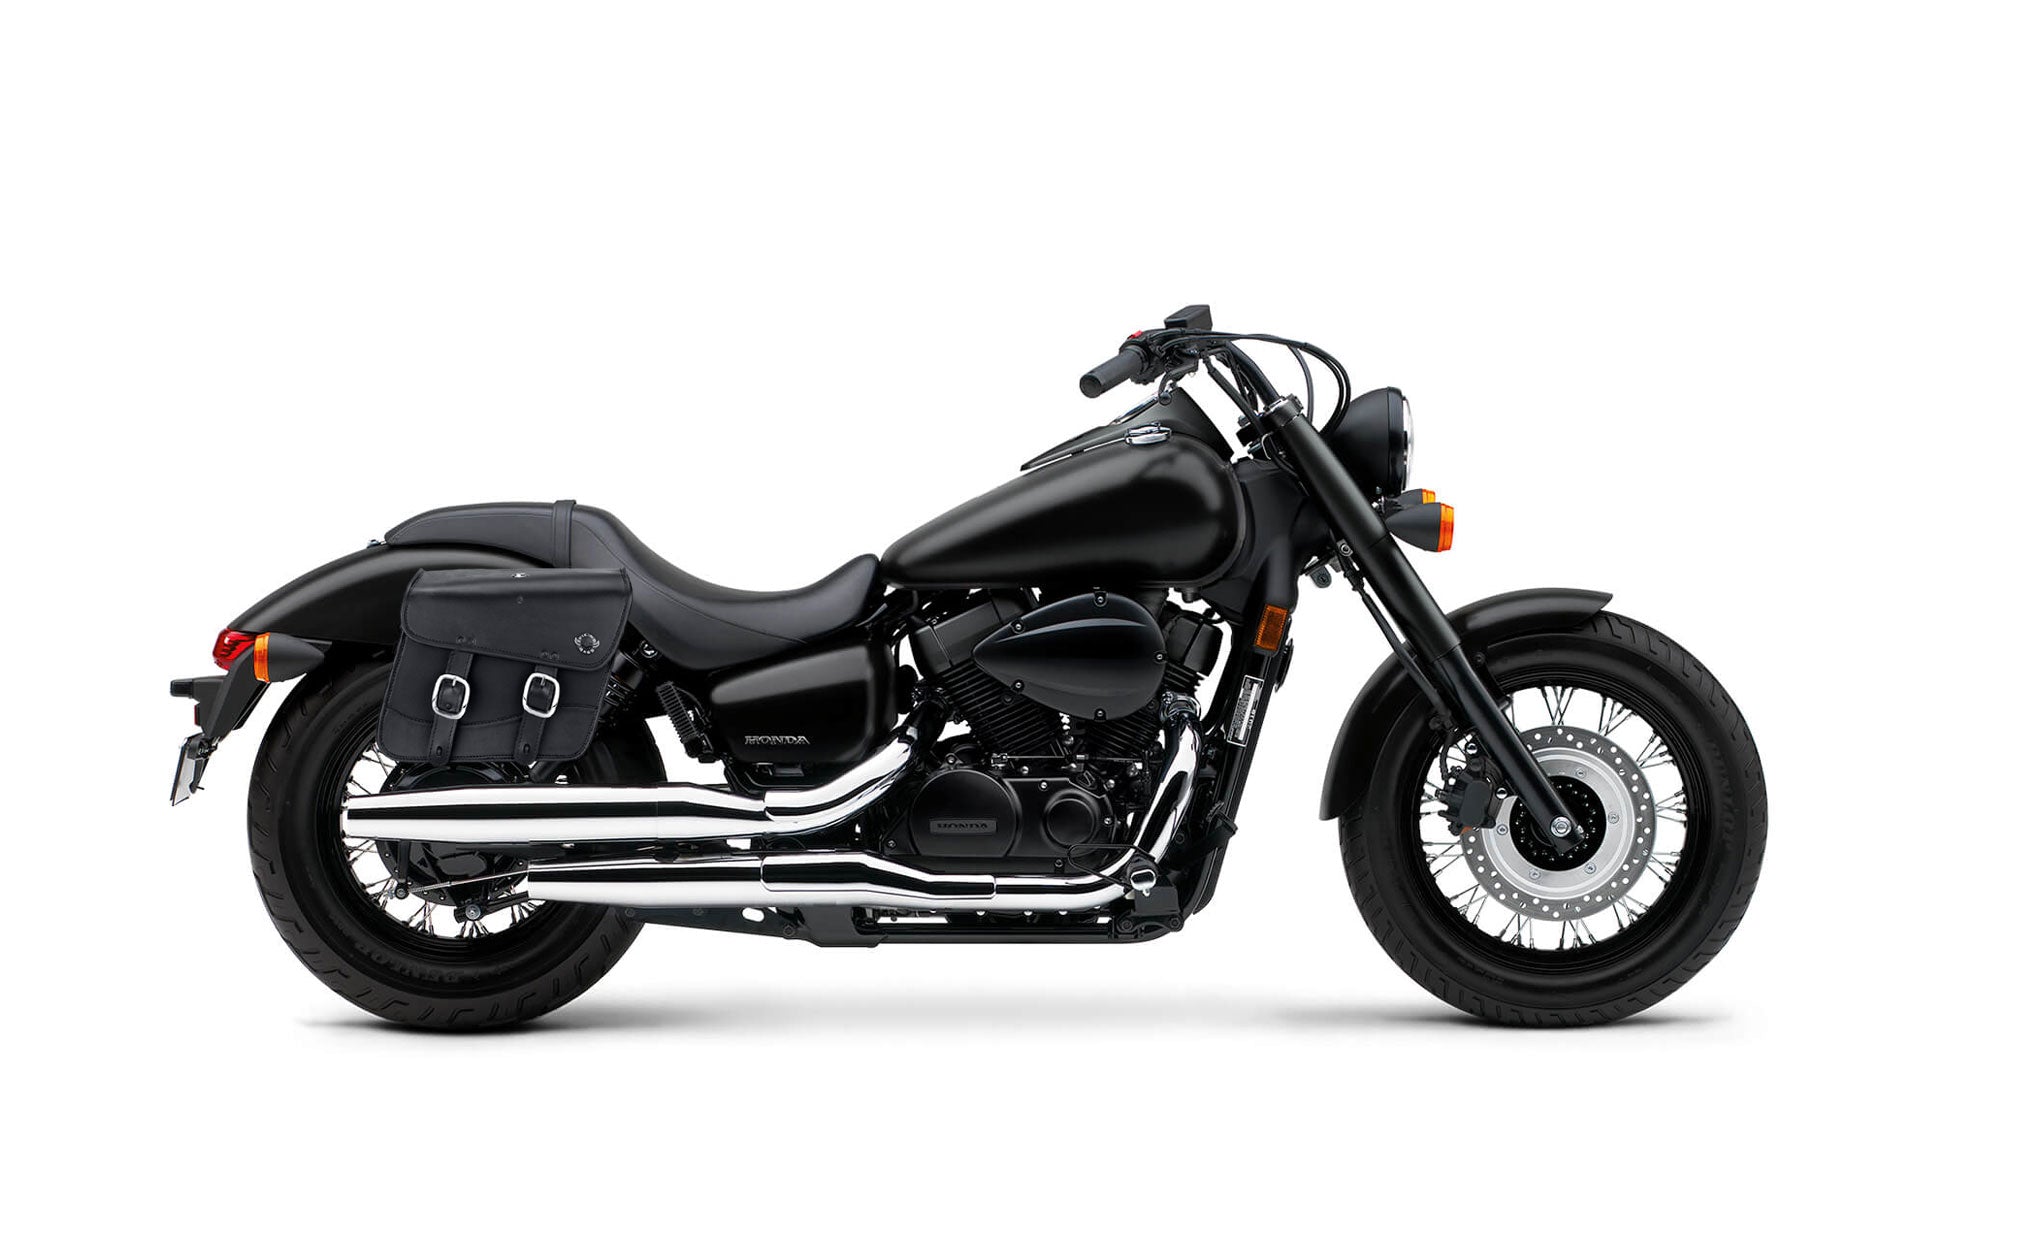 Viking Thor Medium Honda Shadow 750 Phantom Leather Motorcycle Saddlebags on Bike Photo @expand